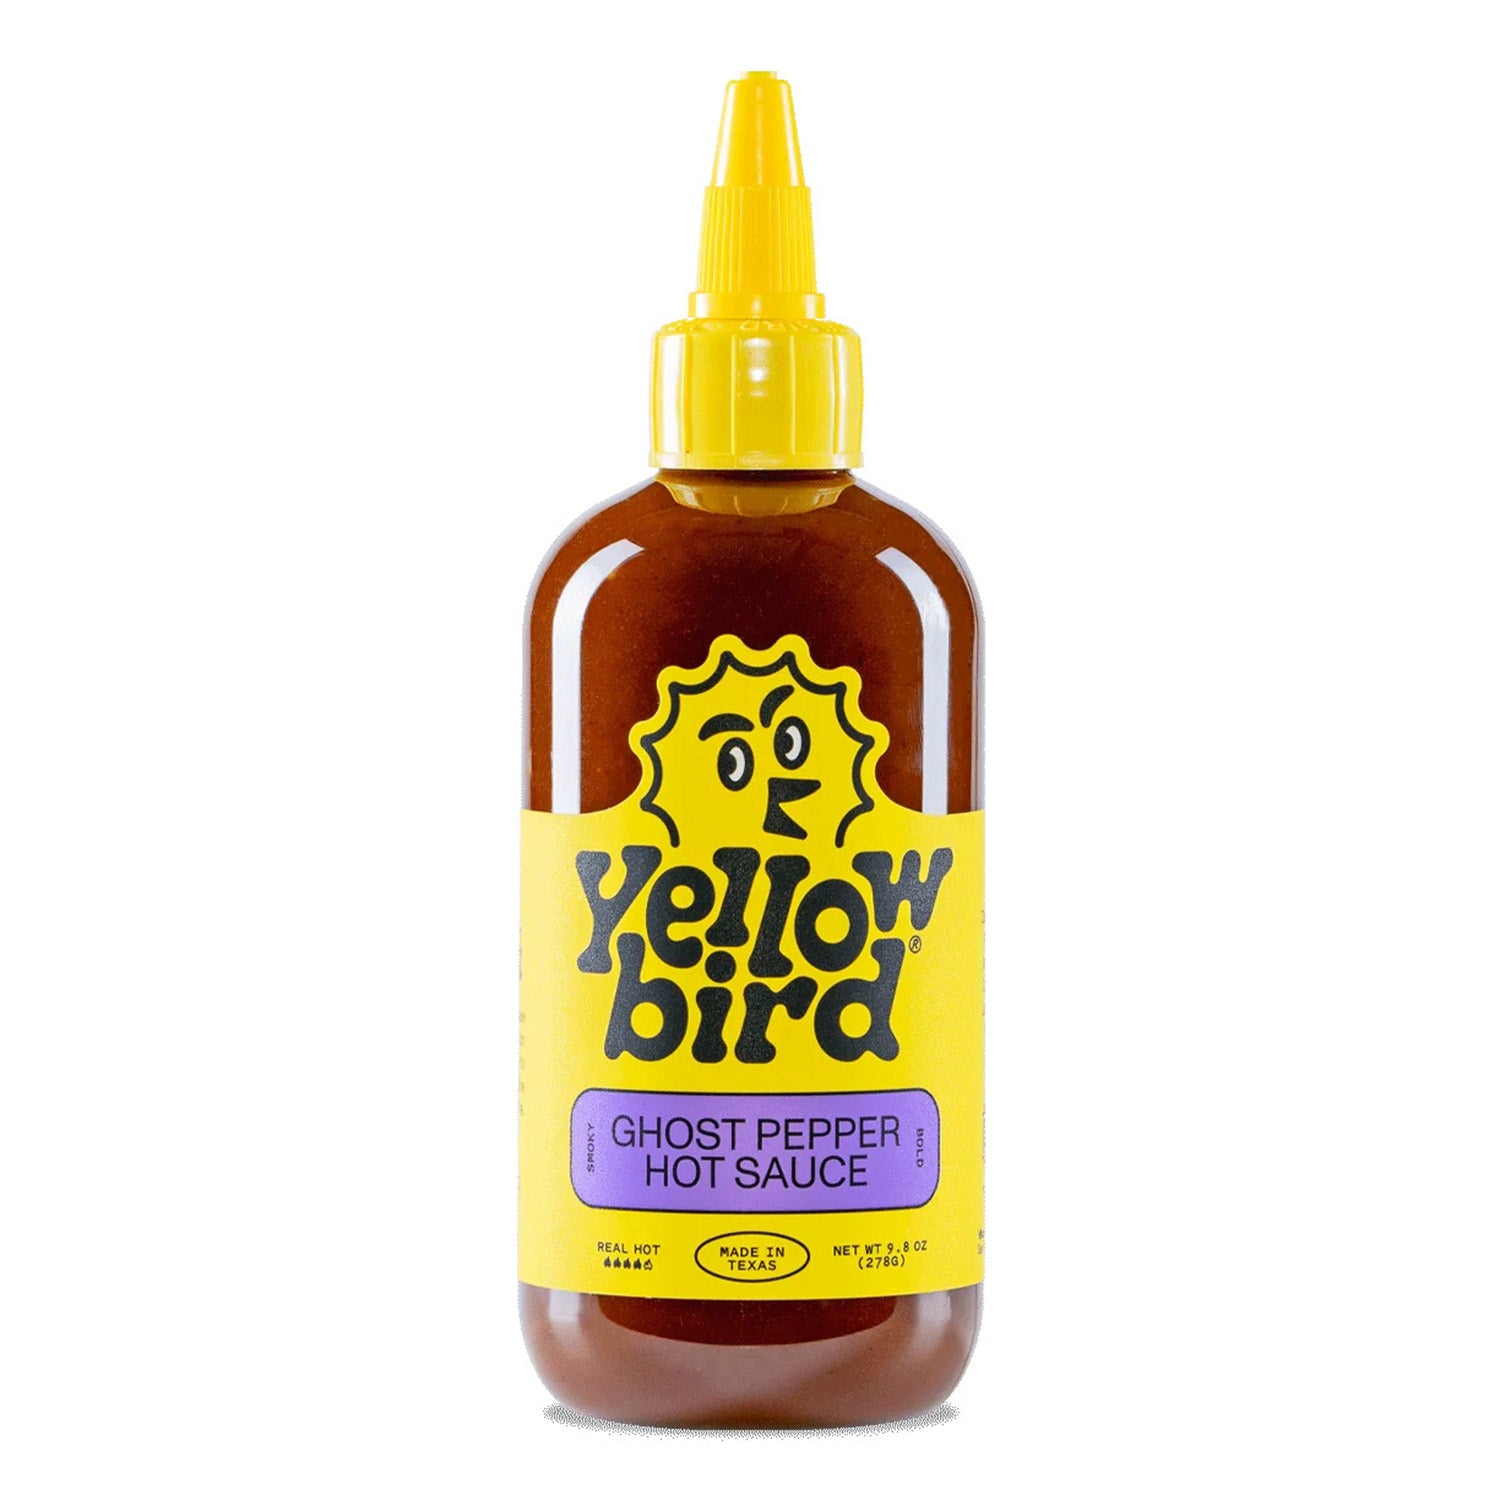 Yellowbird Sauce Ghost Pepper Condiment (9.8oz bottle)